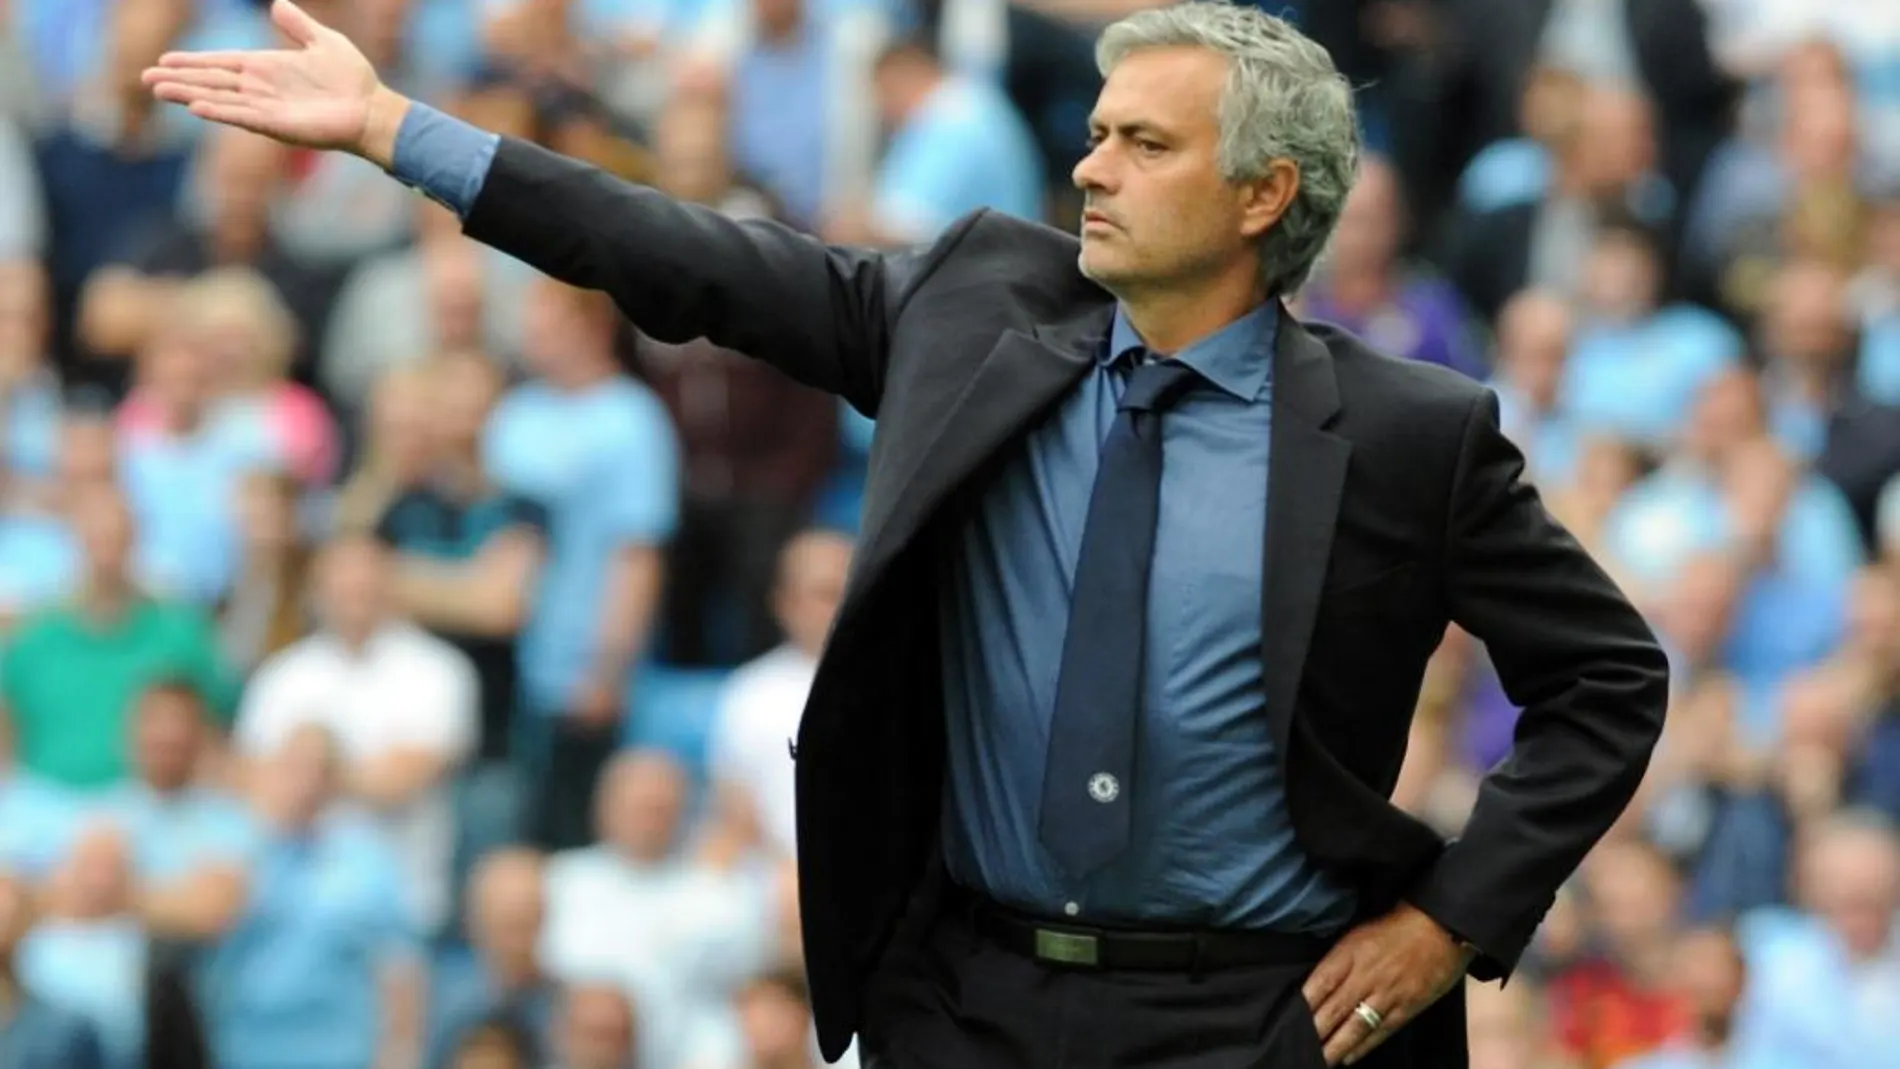 El entrenador del Chelsea, Jose Mourinho